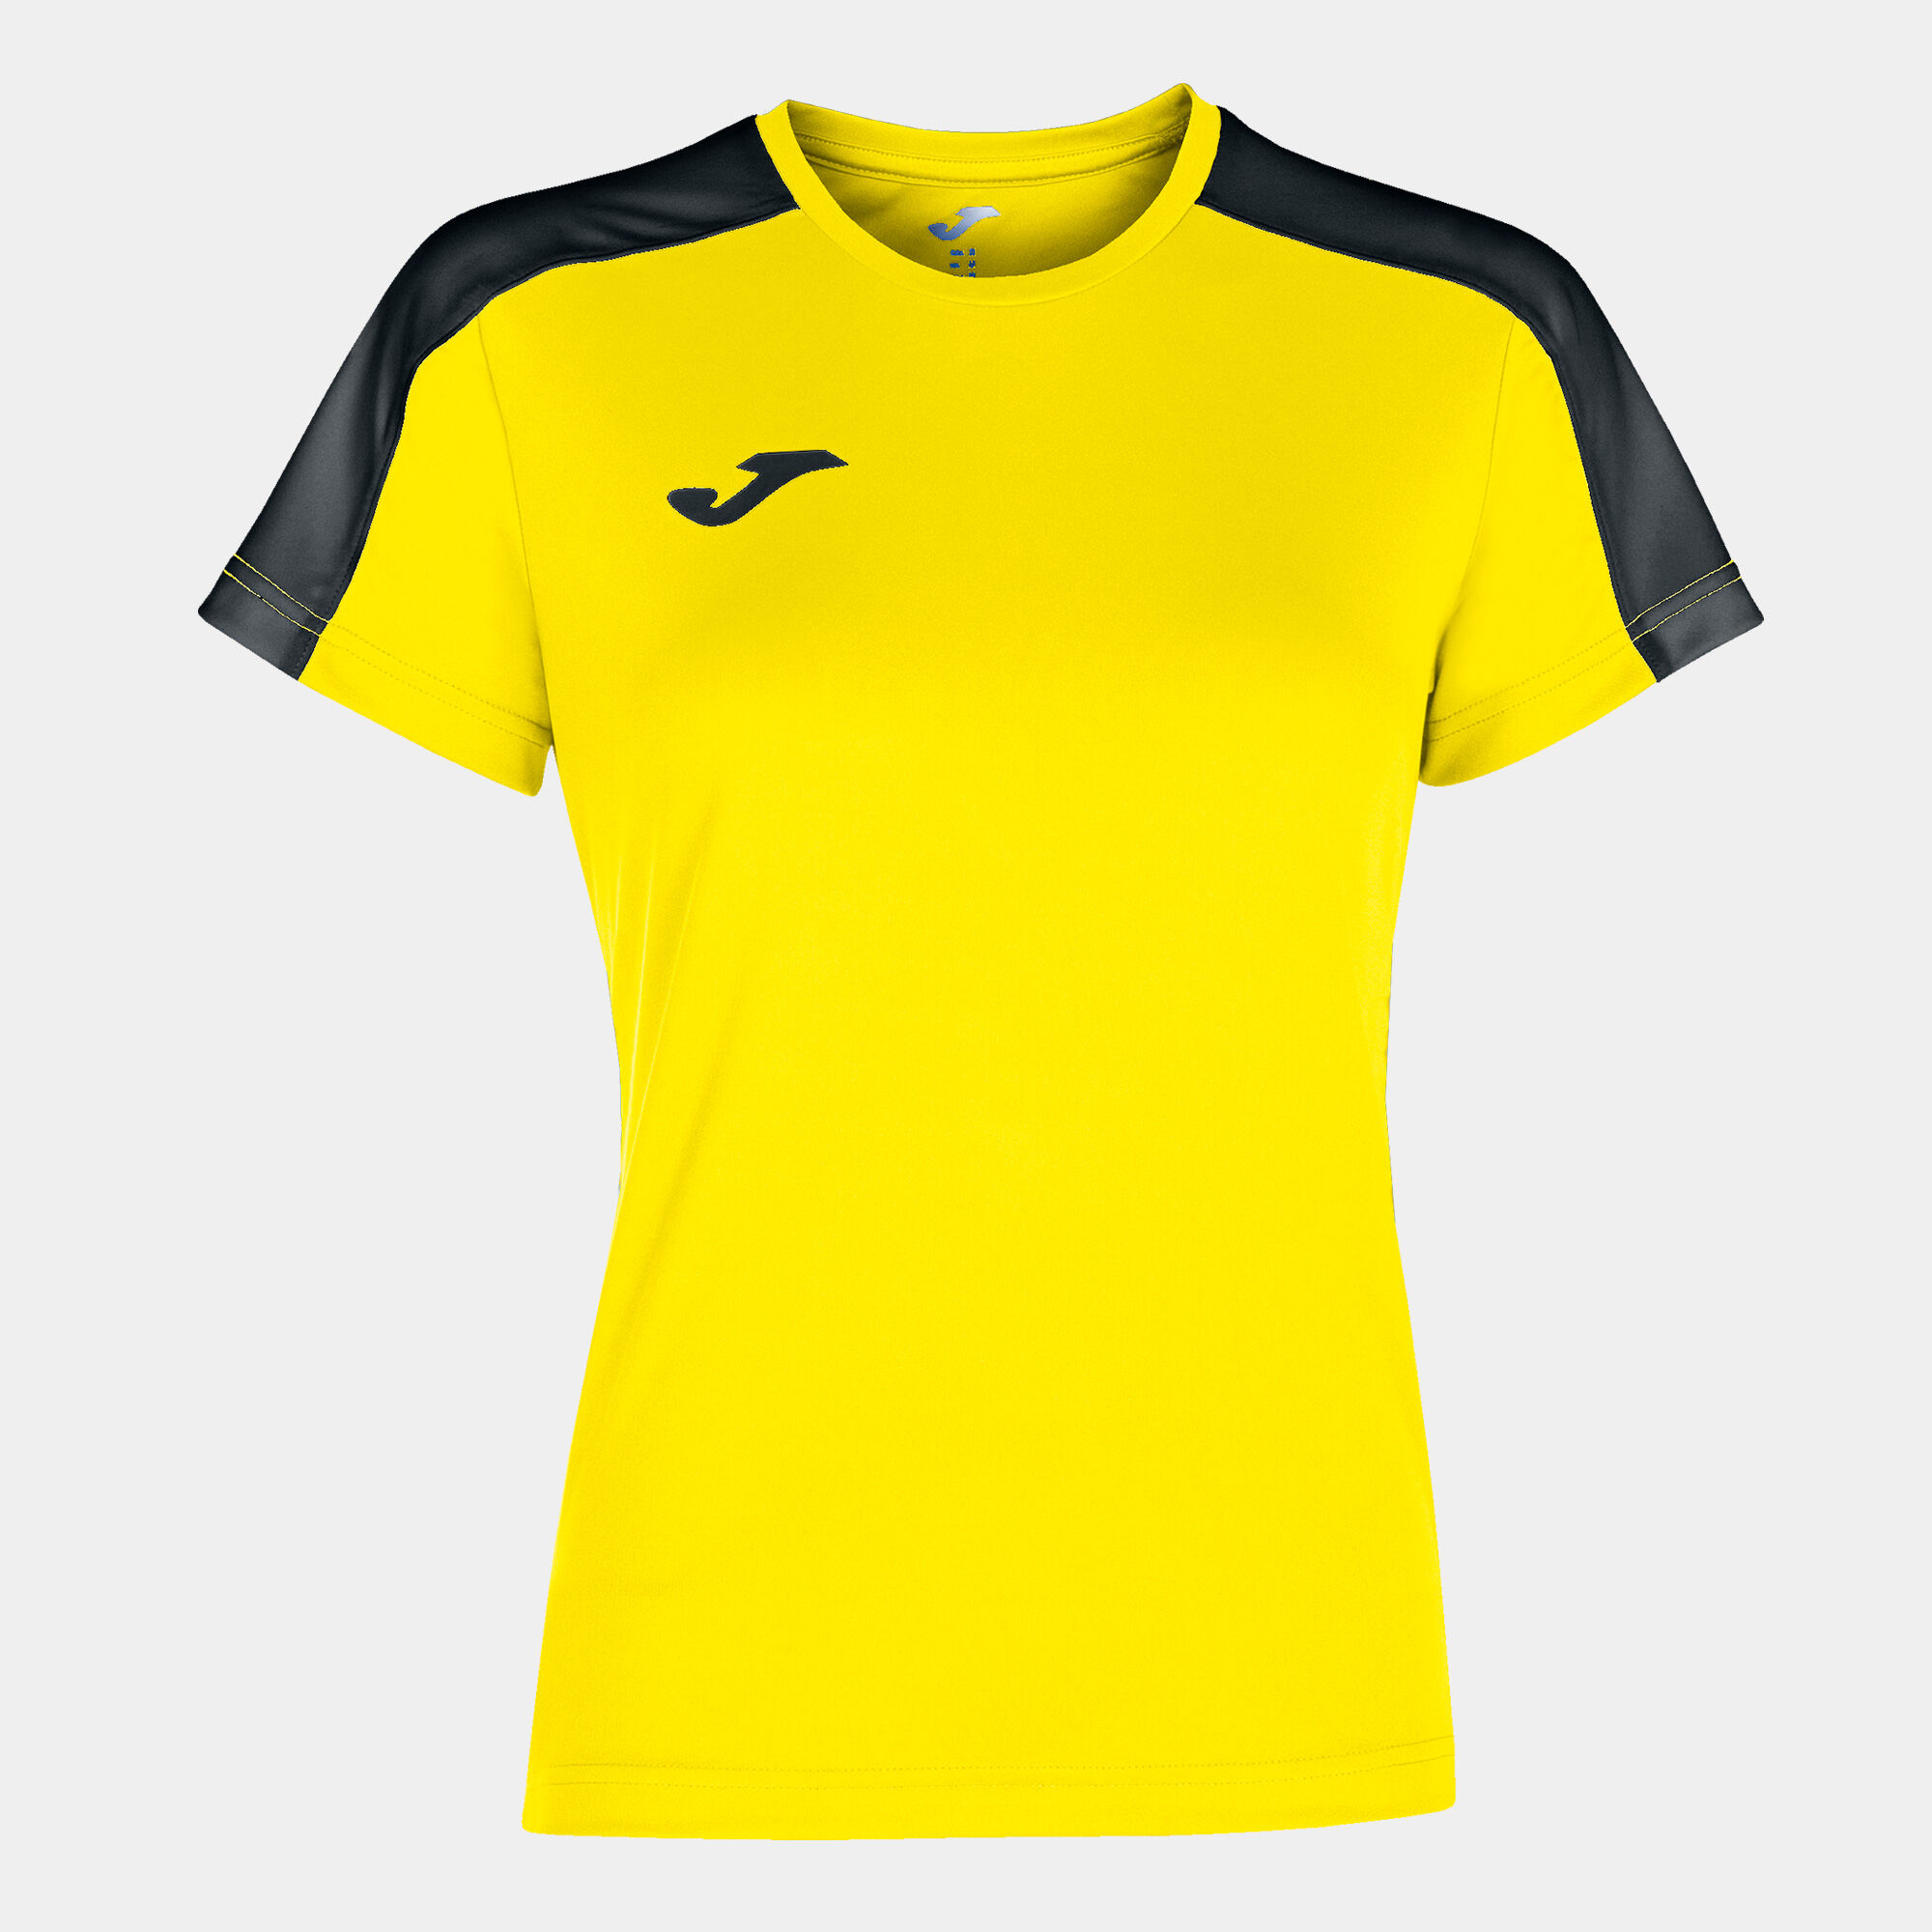 Camiseta manga corta mujer Academy III amarillo negro